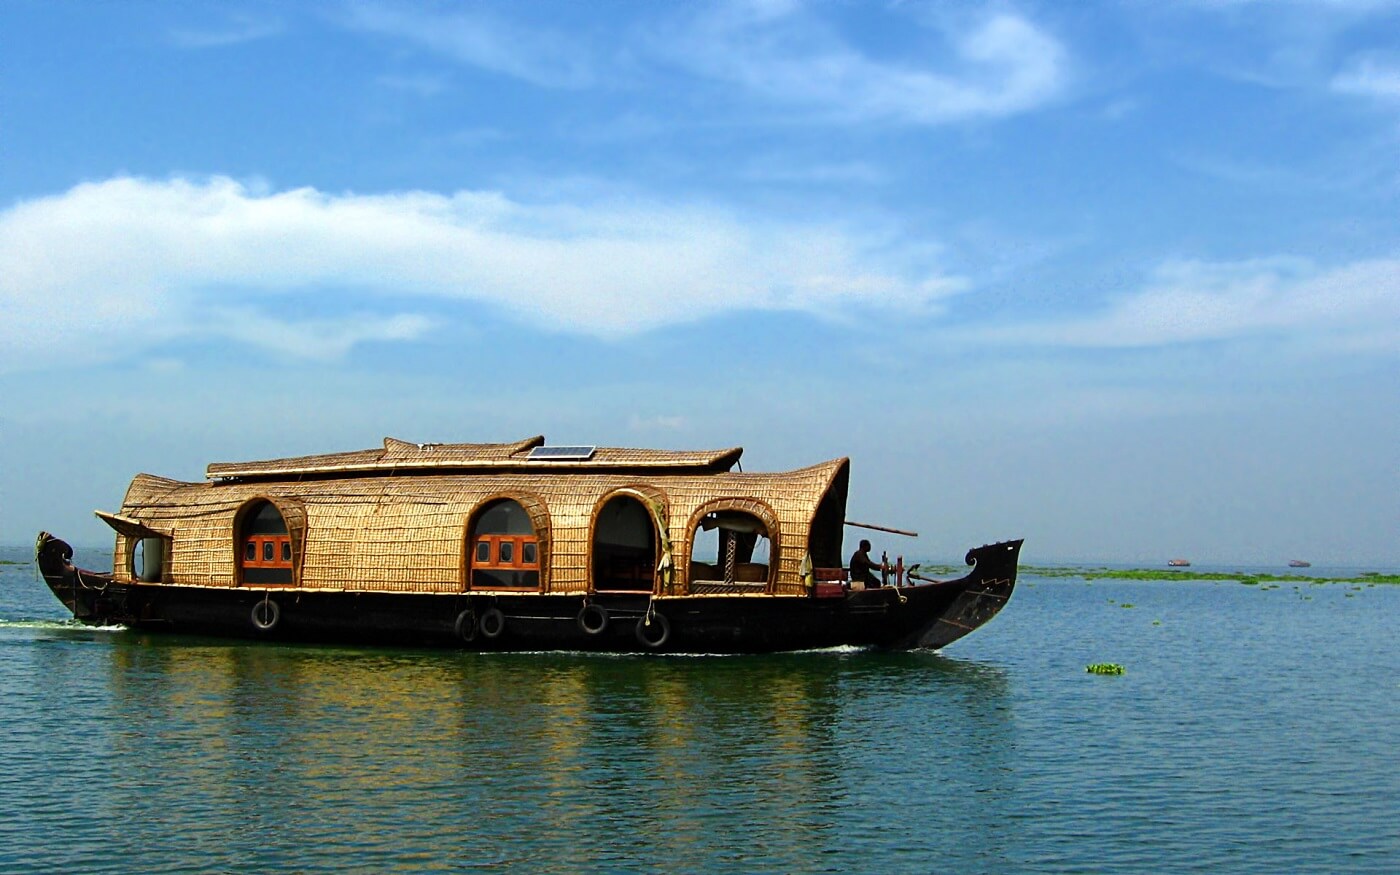 Kerala Backwaters Houseboat